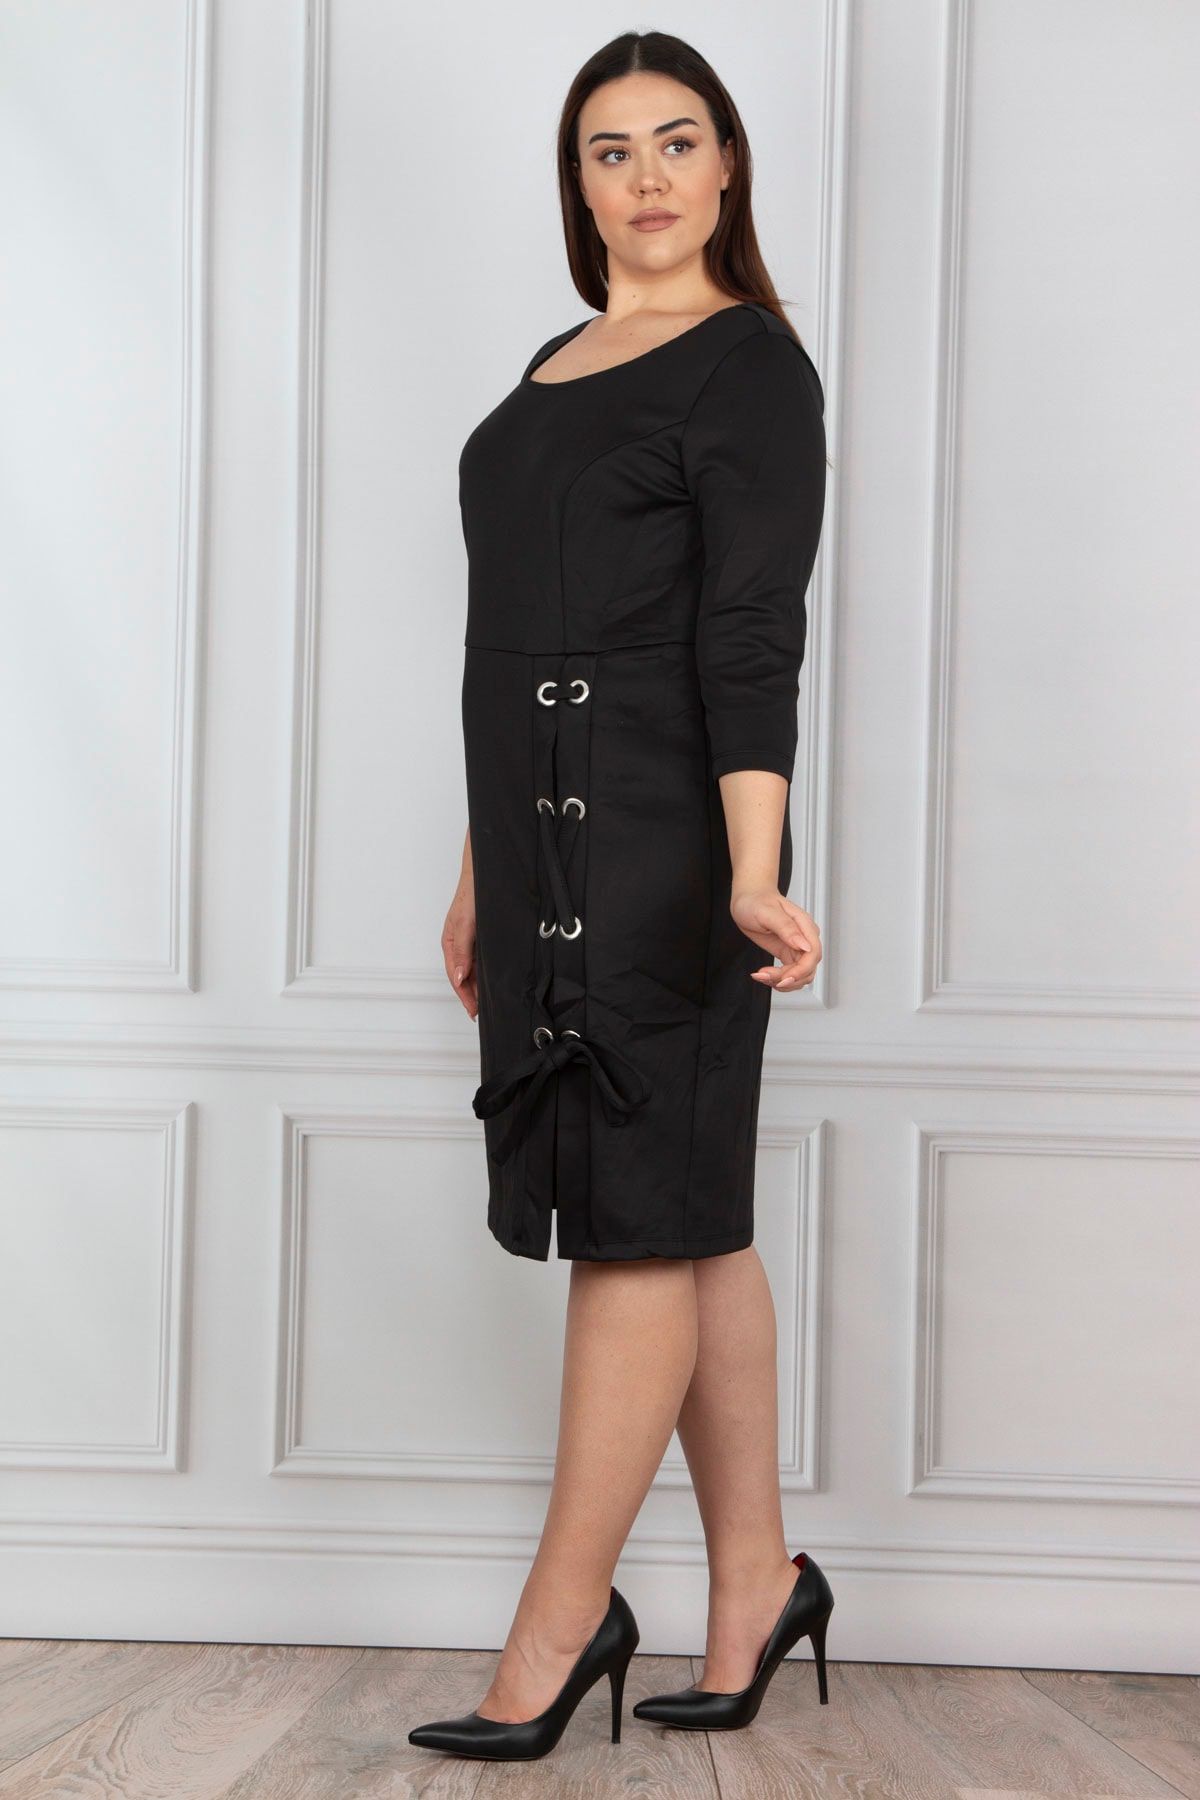 Şans Women's Large Size Black Eyelet Detailed Dress 65n14296 - Trendyol